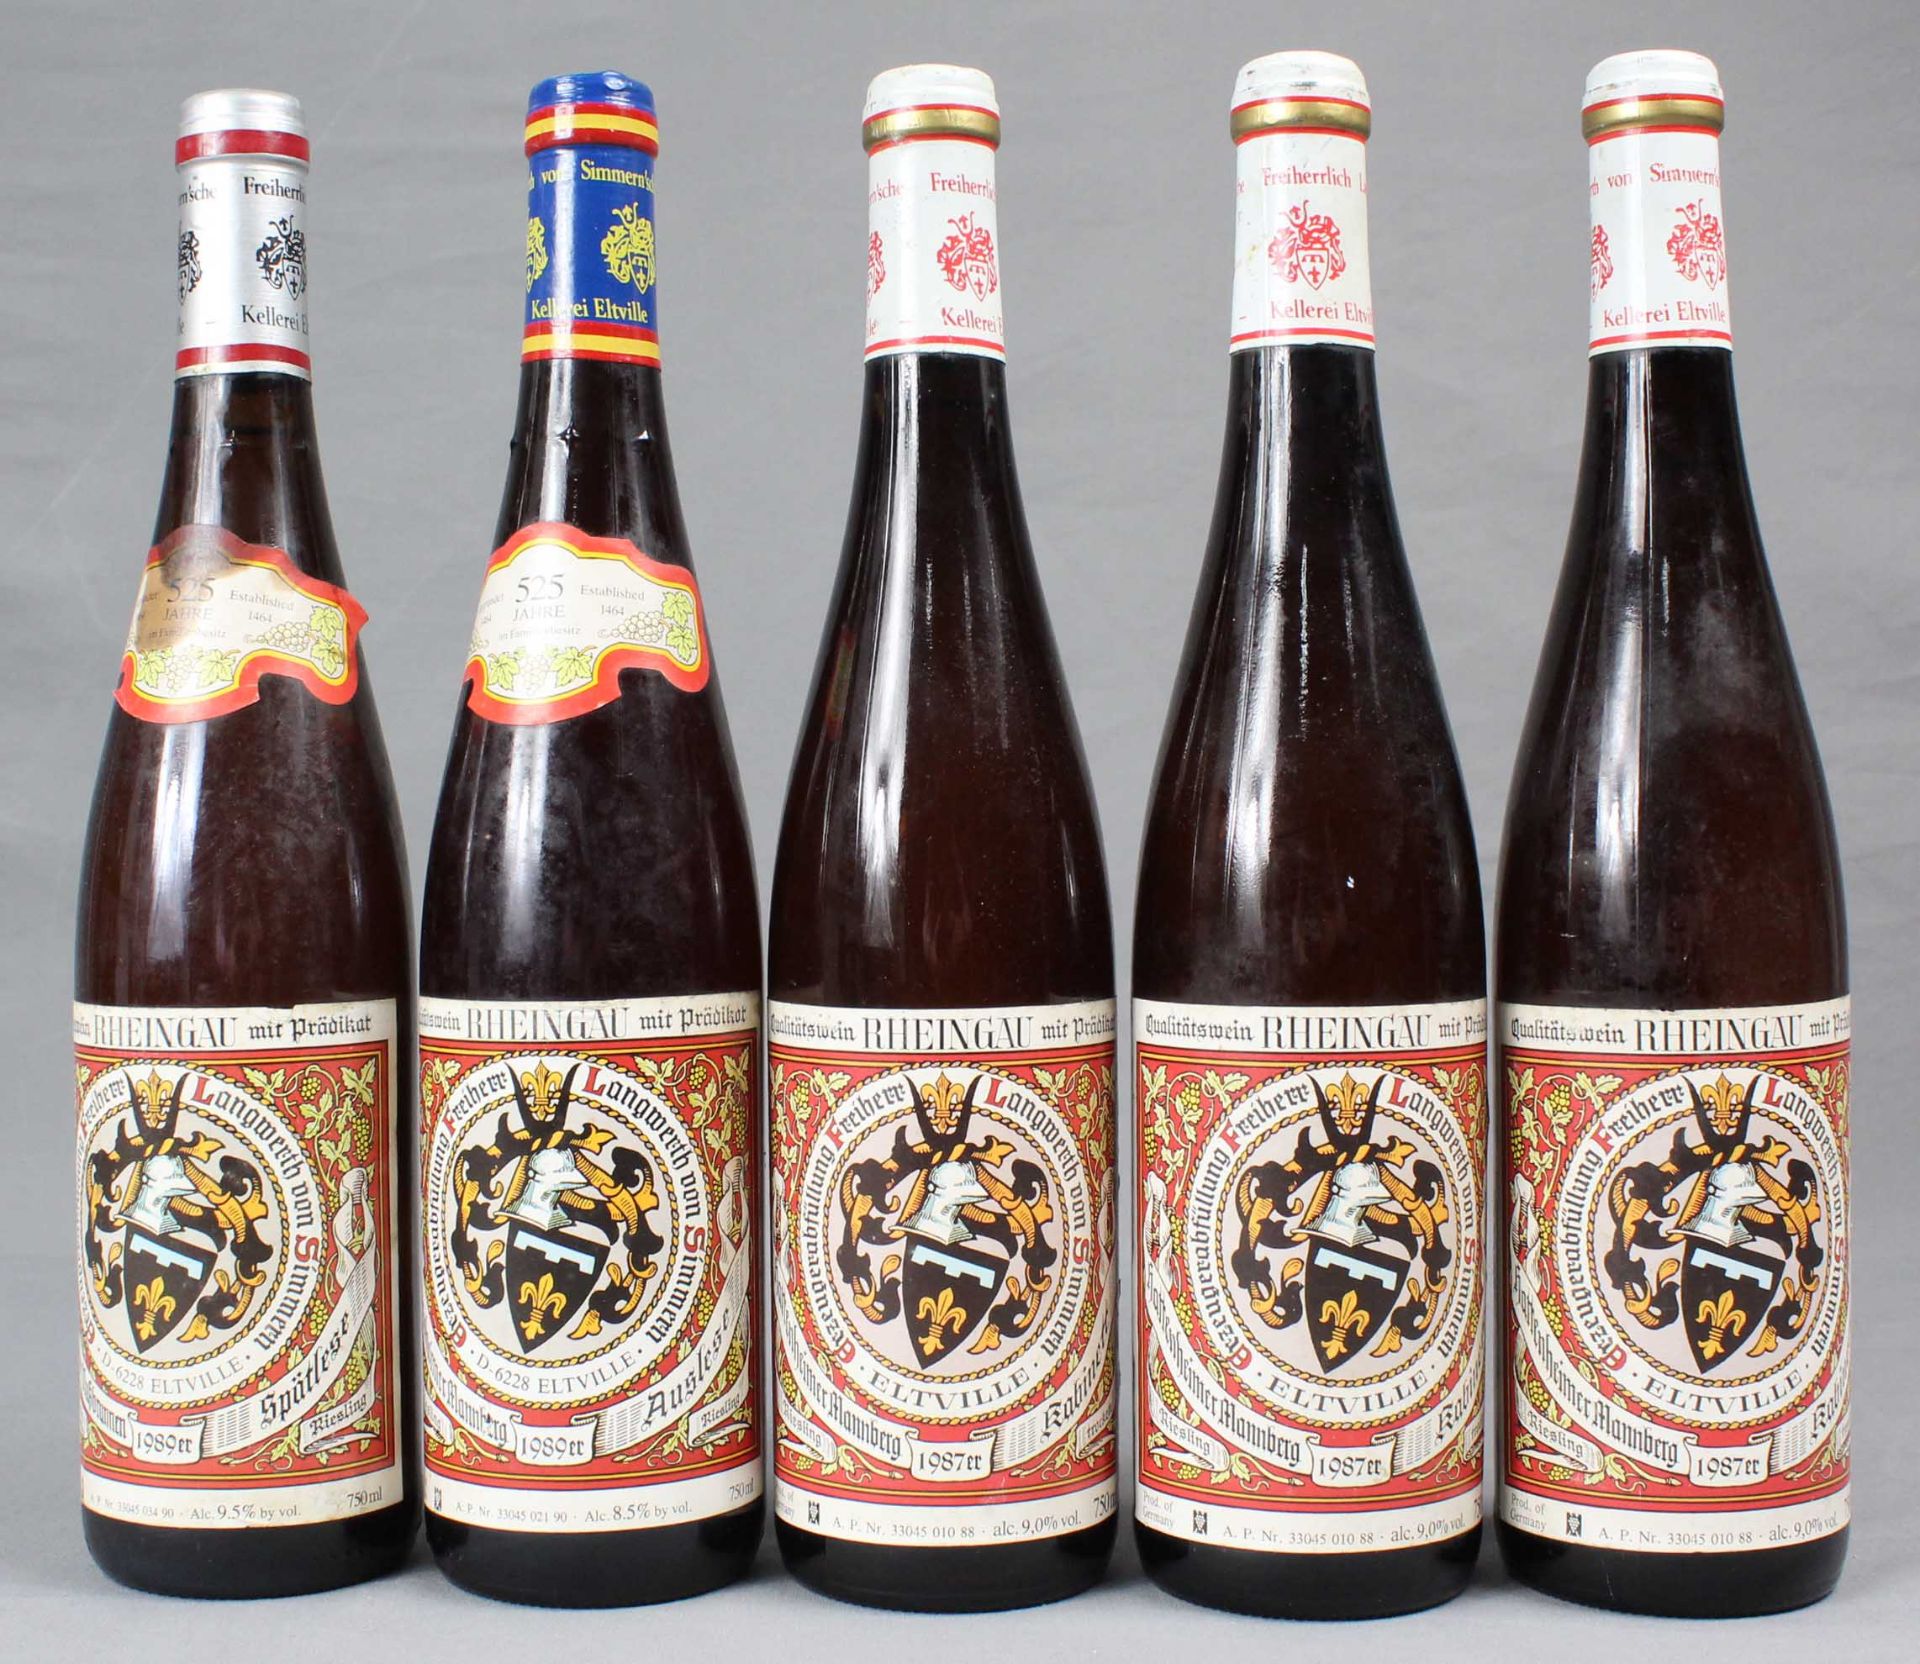 5 ganze Flaschen Riesling Rheingau Langwerth von Simmern.